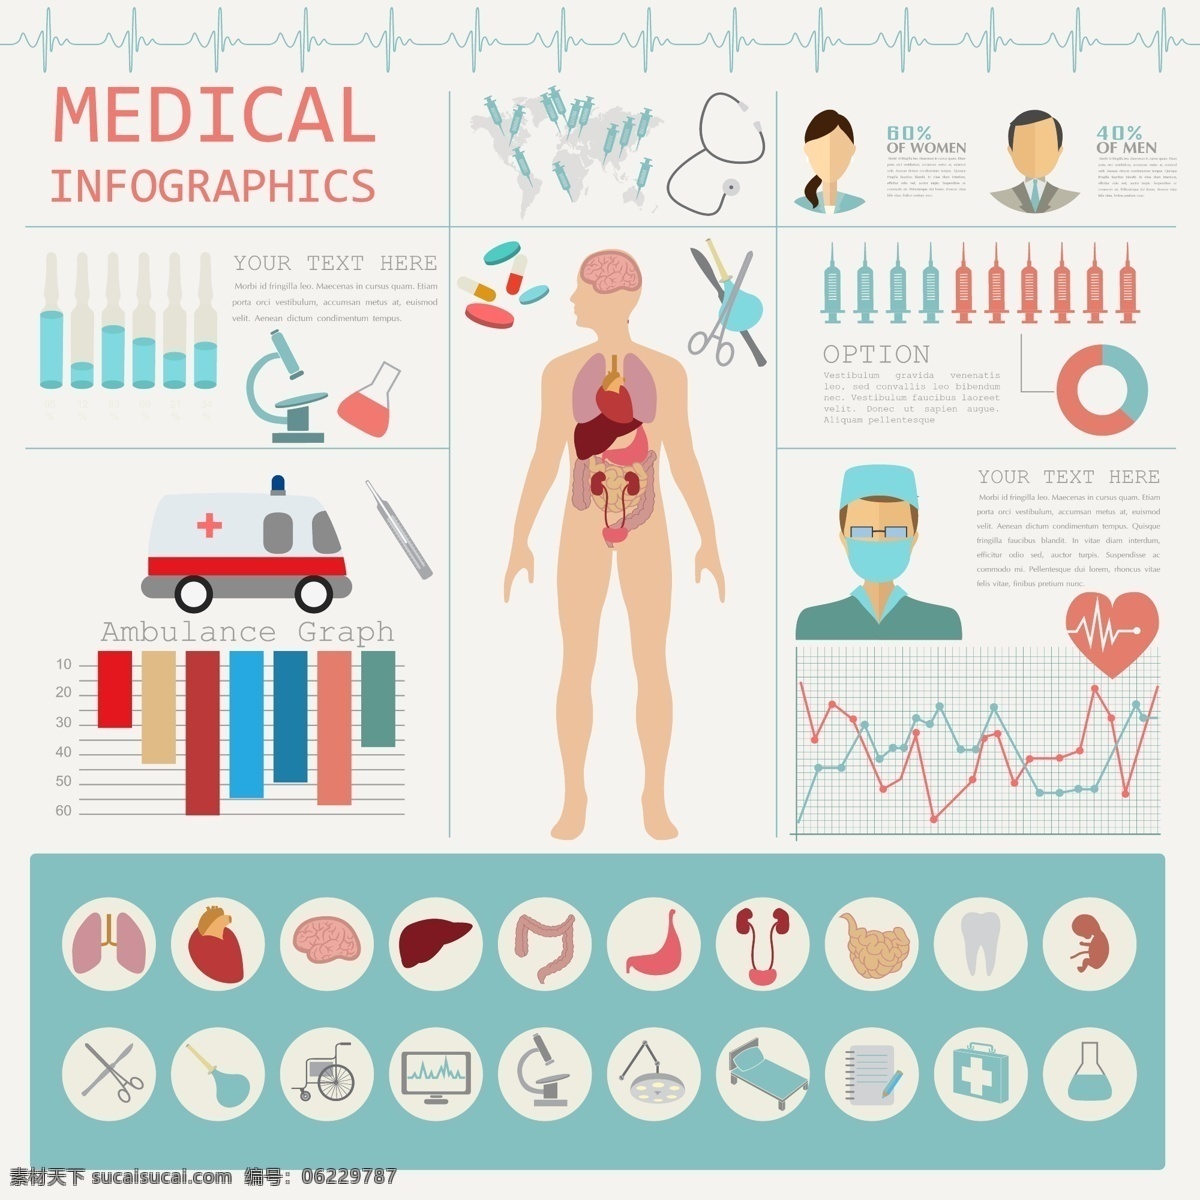 人物 信息 分析图表 人物信息 身体分析 医疗主题 身体健康检查 3d信息图表 立体信息图表 商务信息图表 ppt图形 ppt图表 信息标签